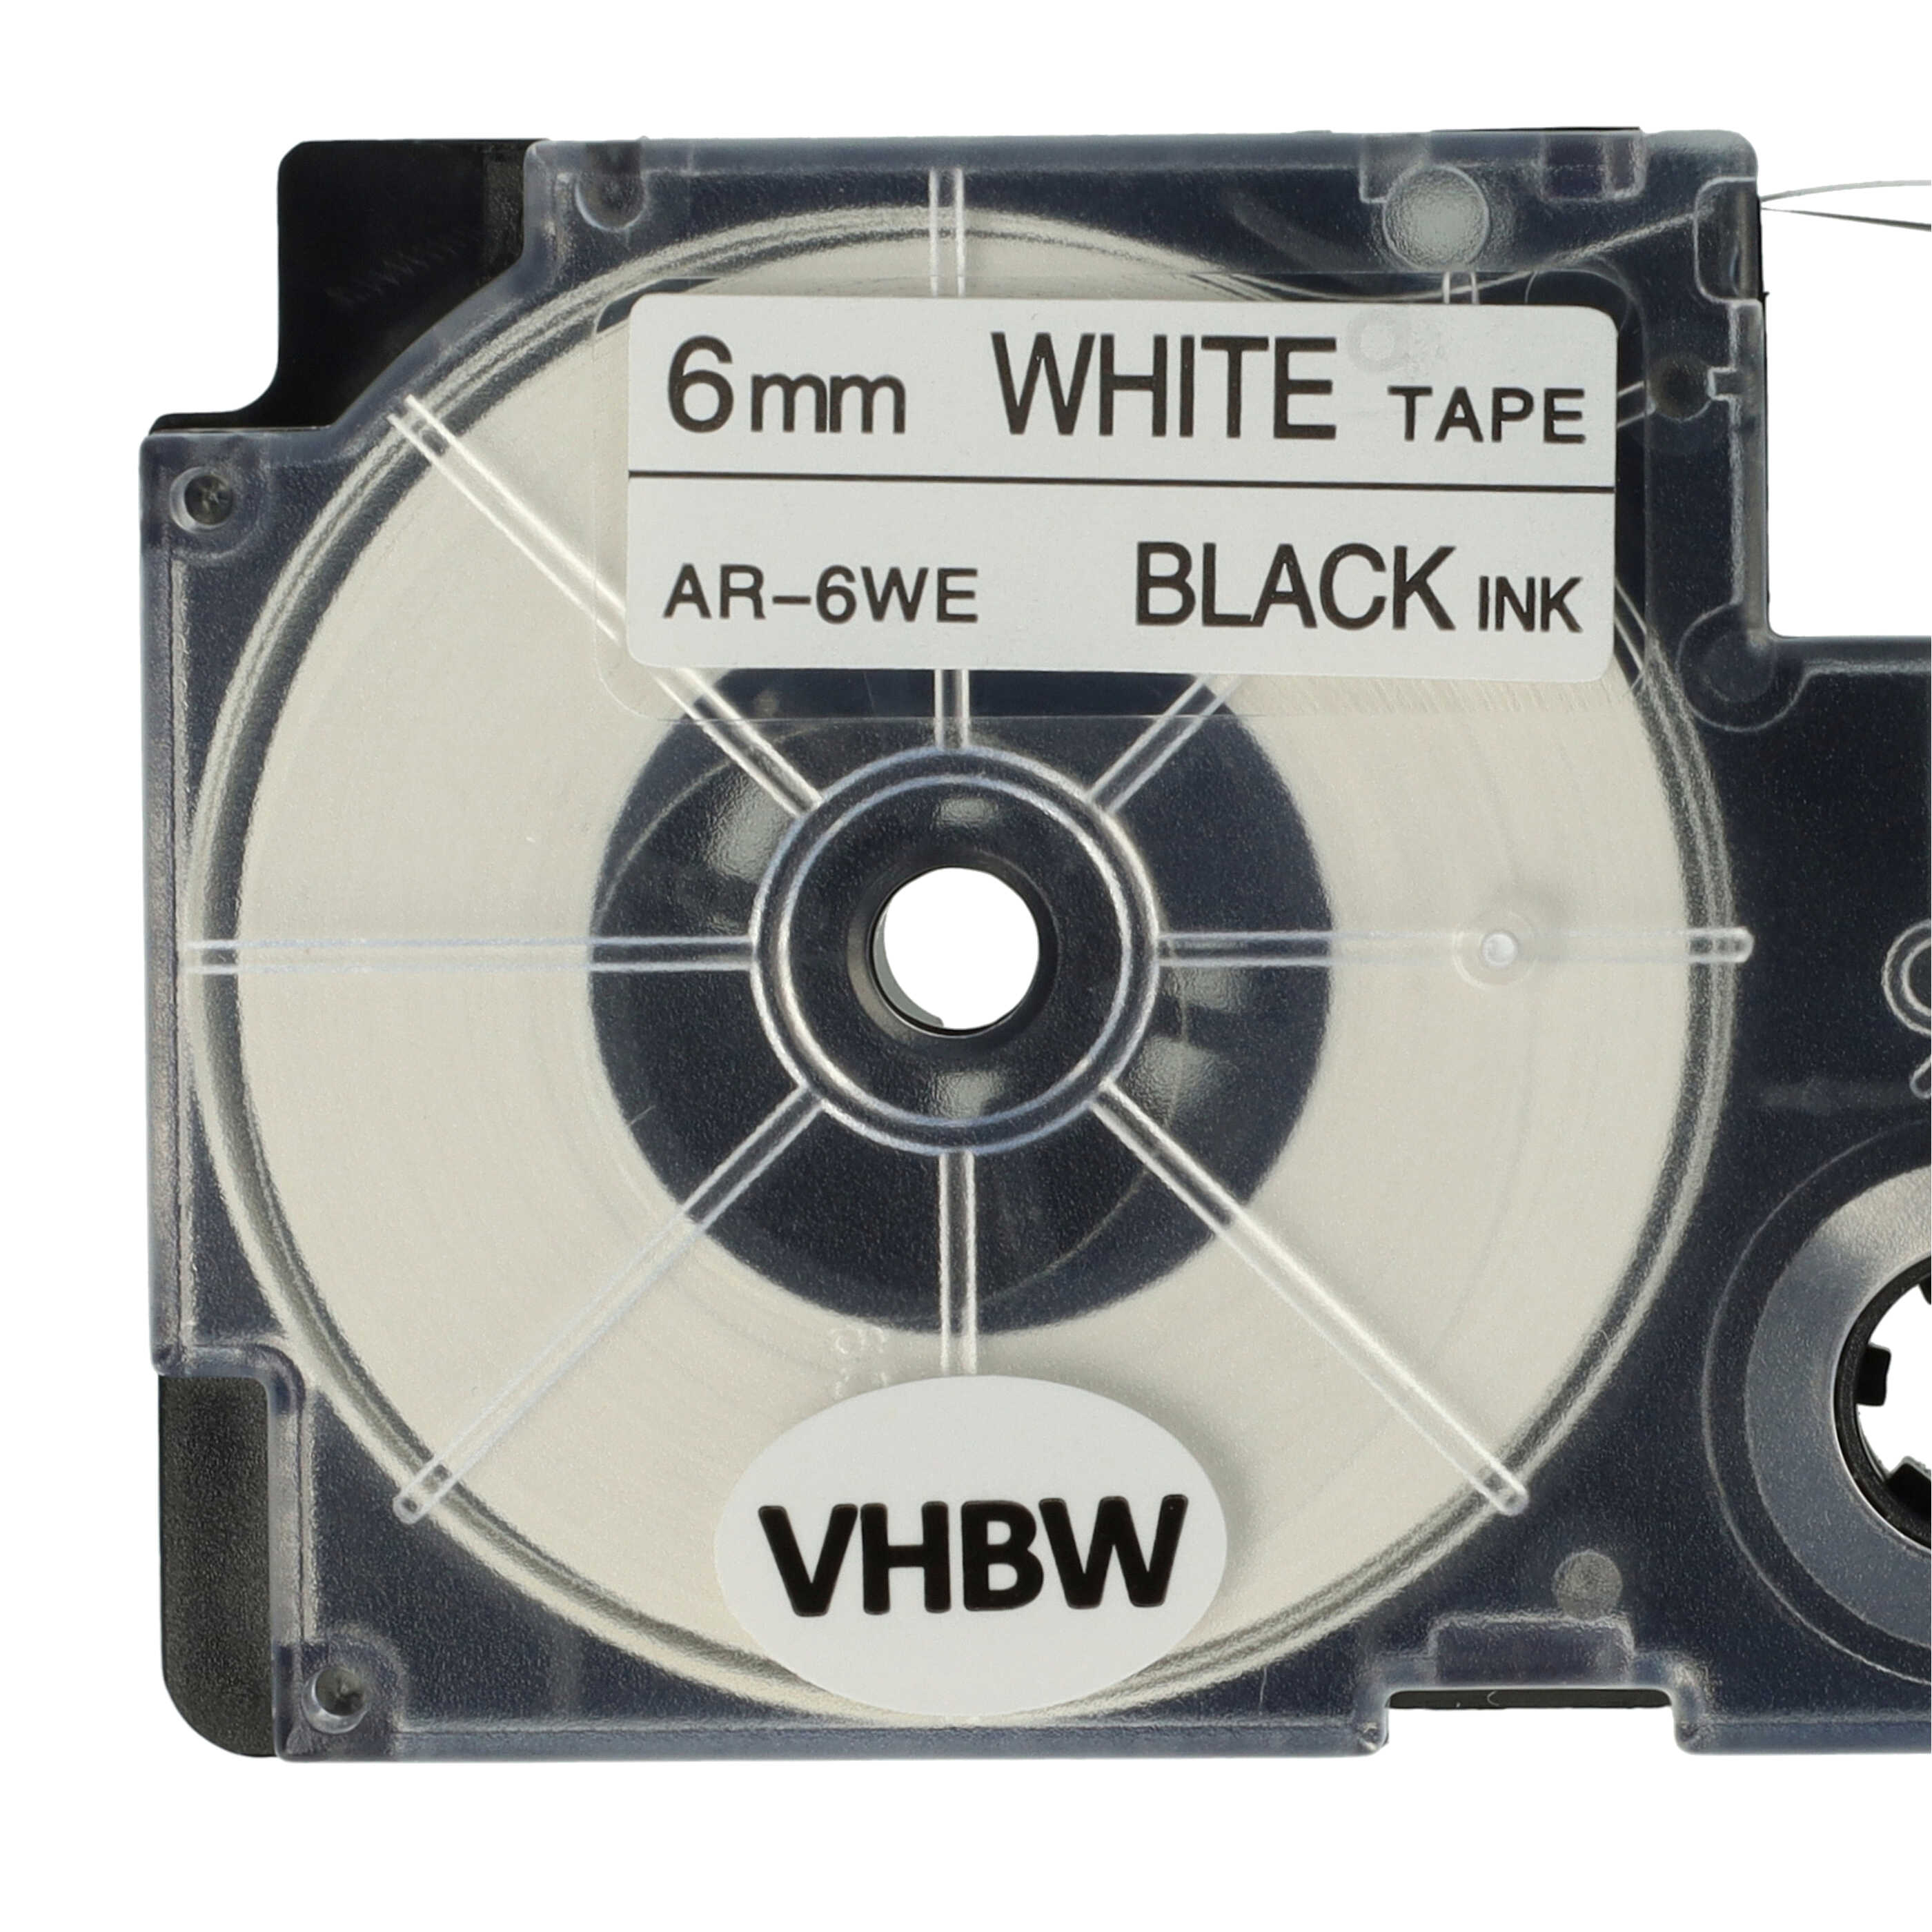 Casete cinta escritura reemplaza Casio XR-6WE, XR-6WE1 Negro su Blanco